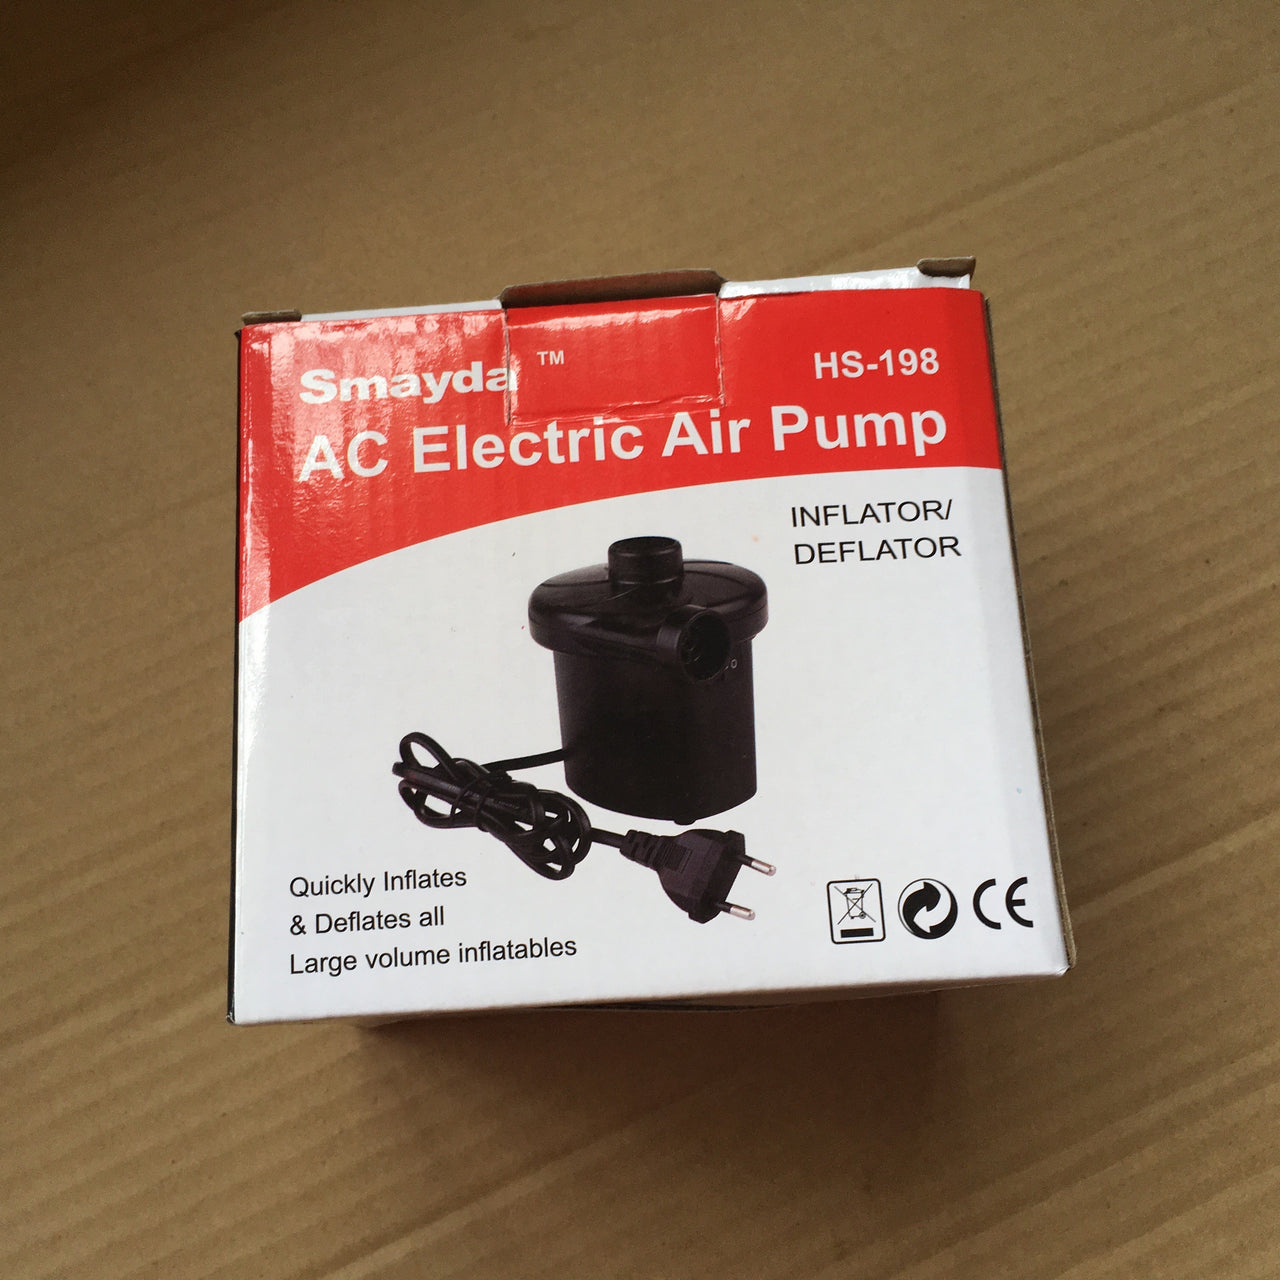 Portable electric air pump